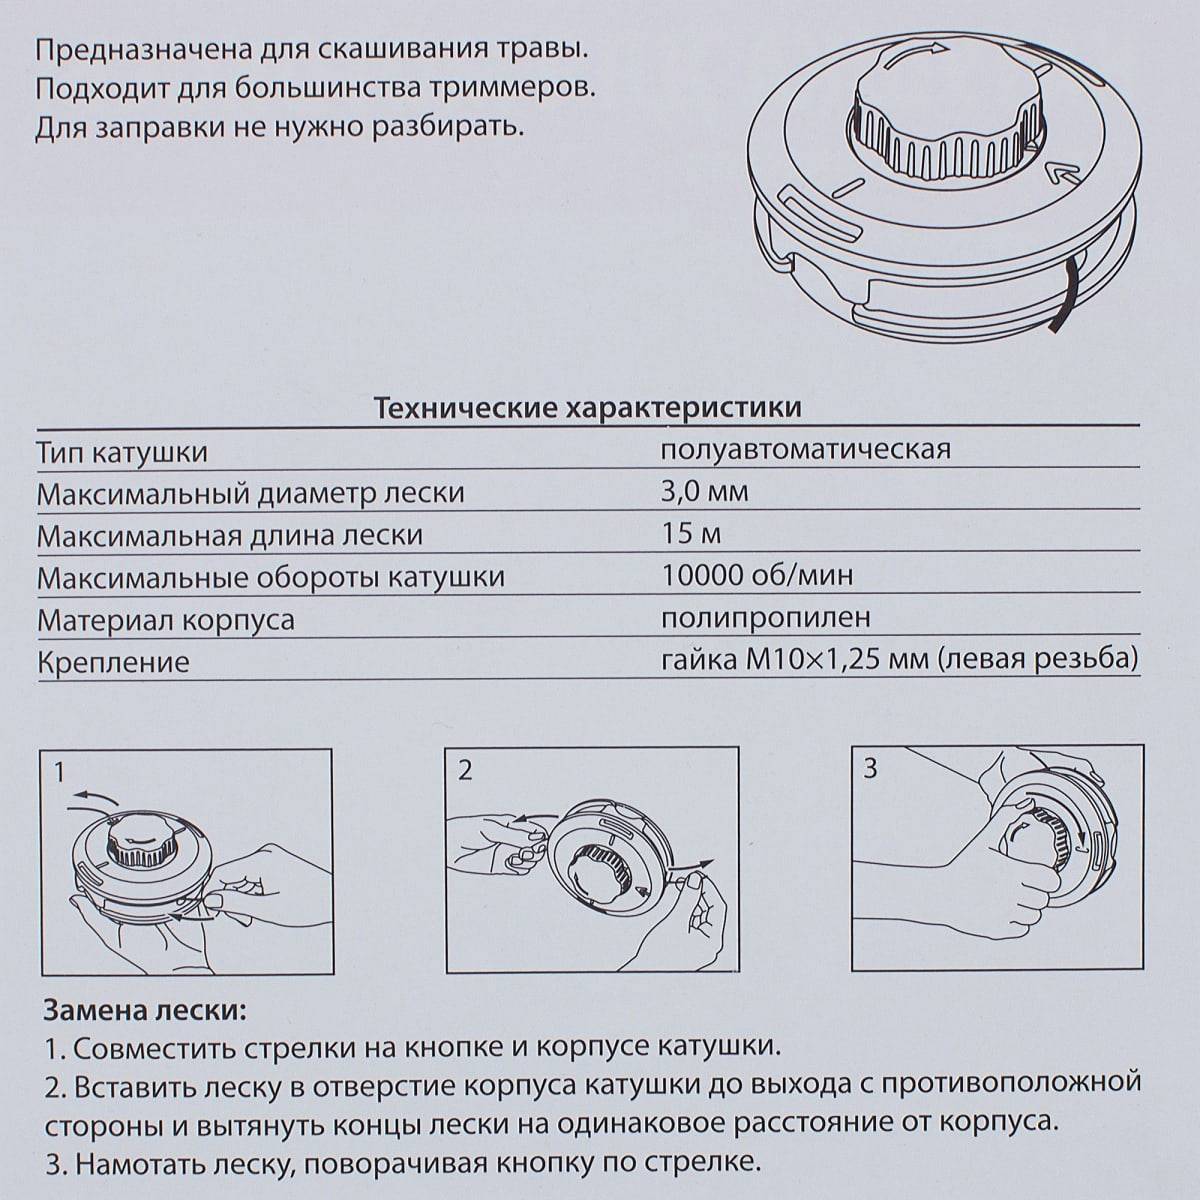 Как правильно заправить леску в триммер - moy-instrument.ru - обзор инструмента и техники